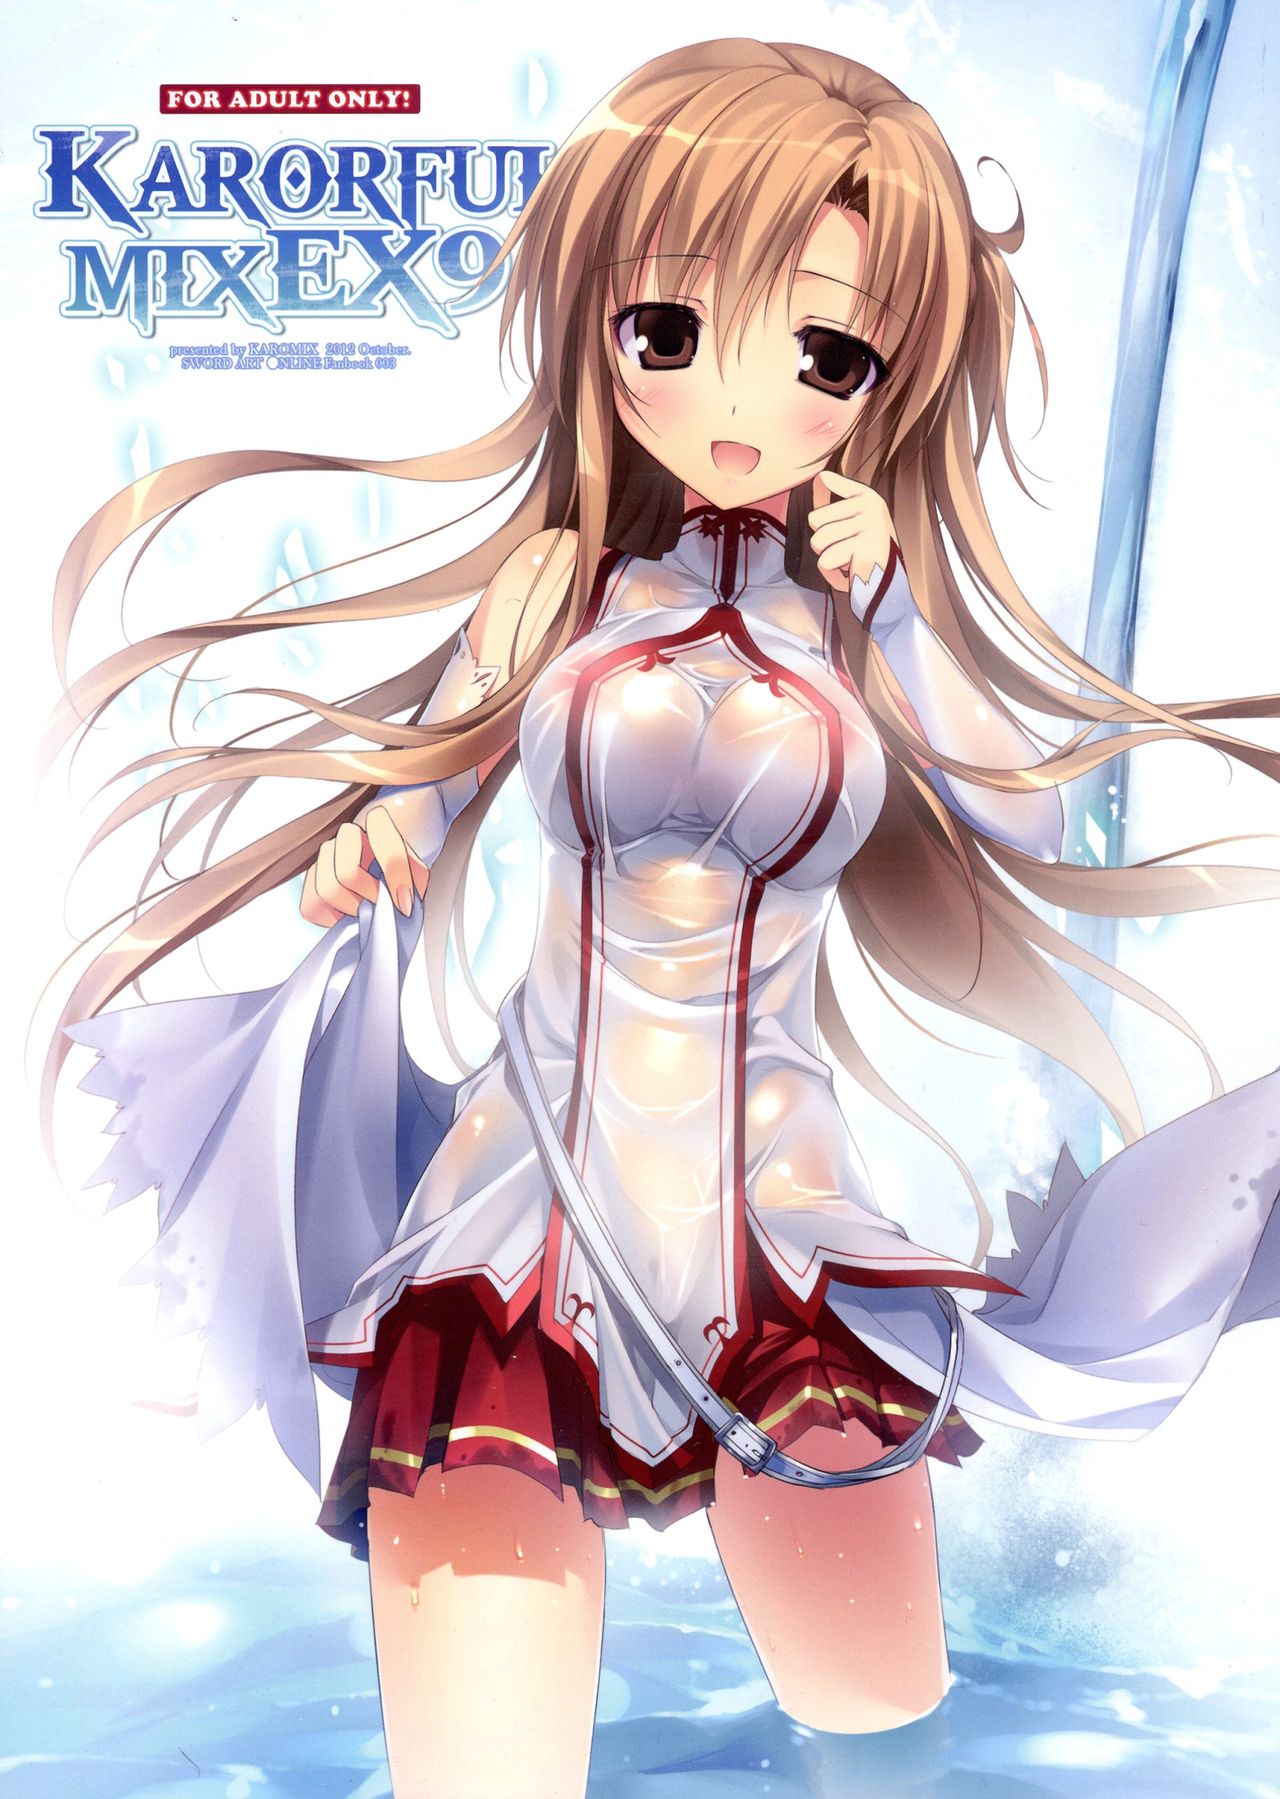 (SC57) [KAROMIX (karory)] KARORFUL MIX EX9 (Sword Art Online) (サンクリ57) [KAROMIX (karory)] KARORFUL MIX EX9 (ソードアート・オンライン)